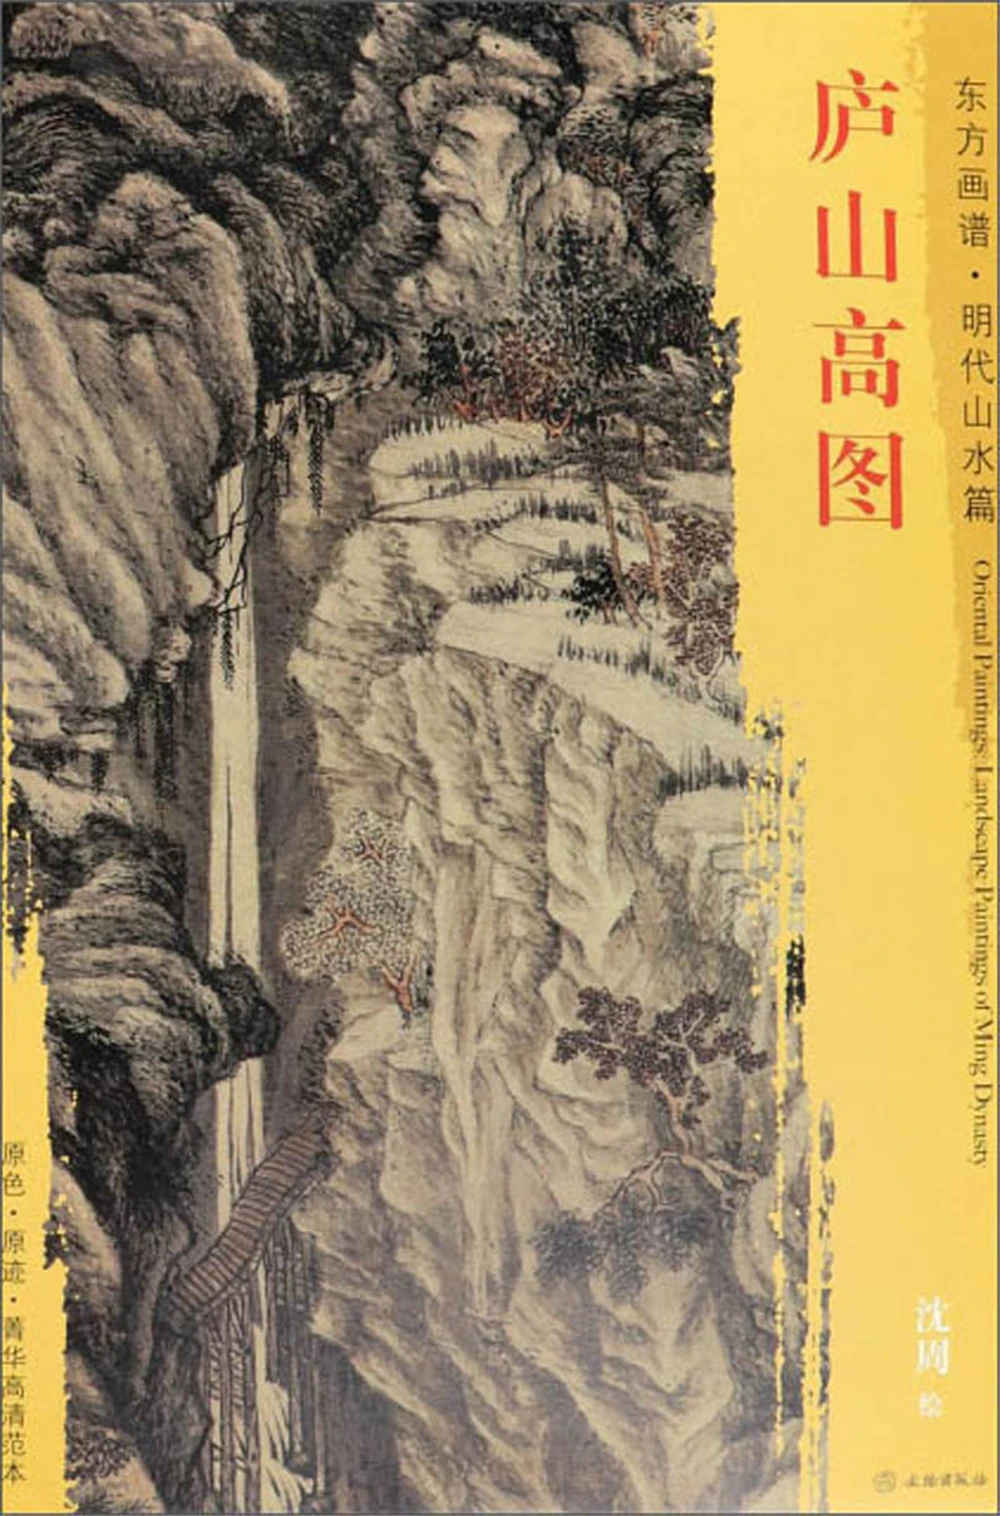 

Книга с высокой картиной гор Лушань-Восточная живопись. Династия Мин пейзаж эскиз искусство Рисование Живопись тетрадь